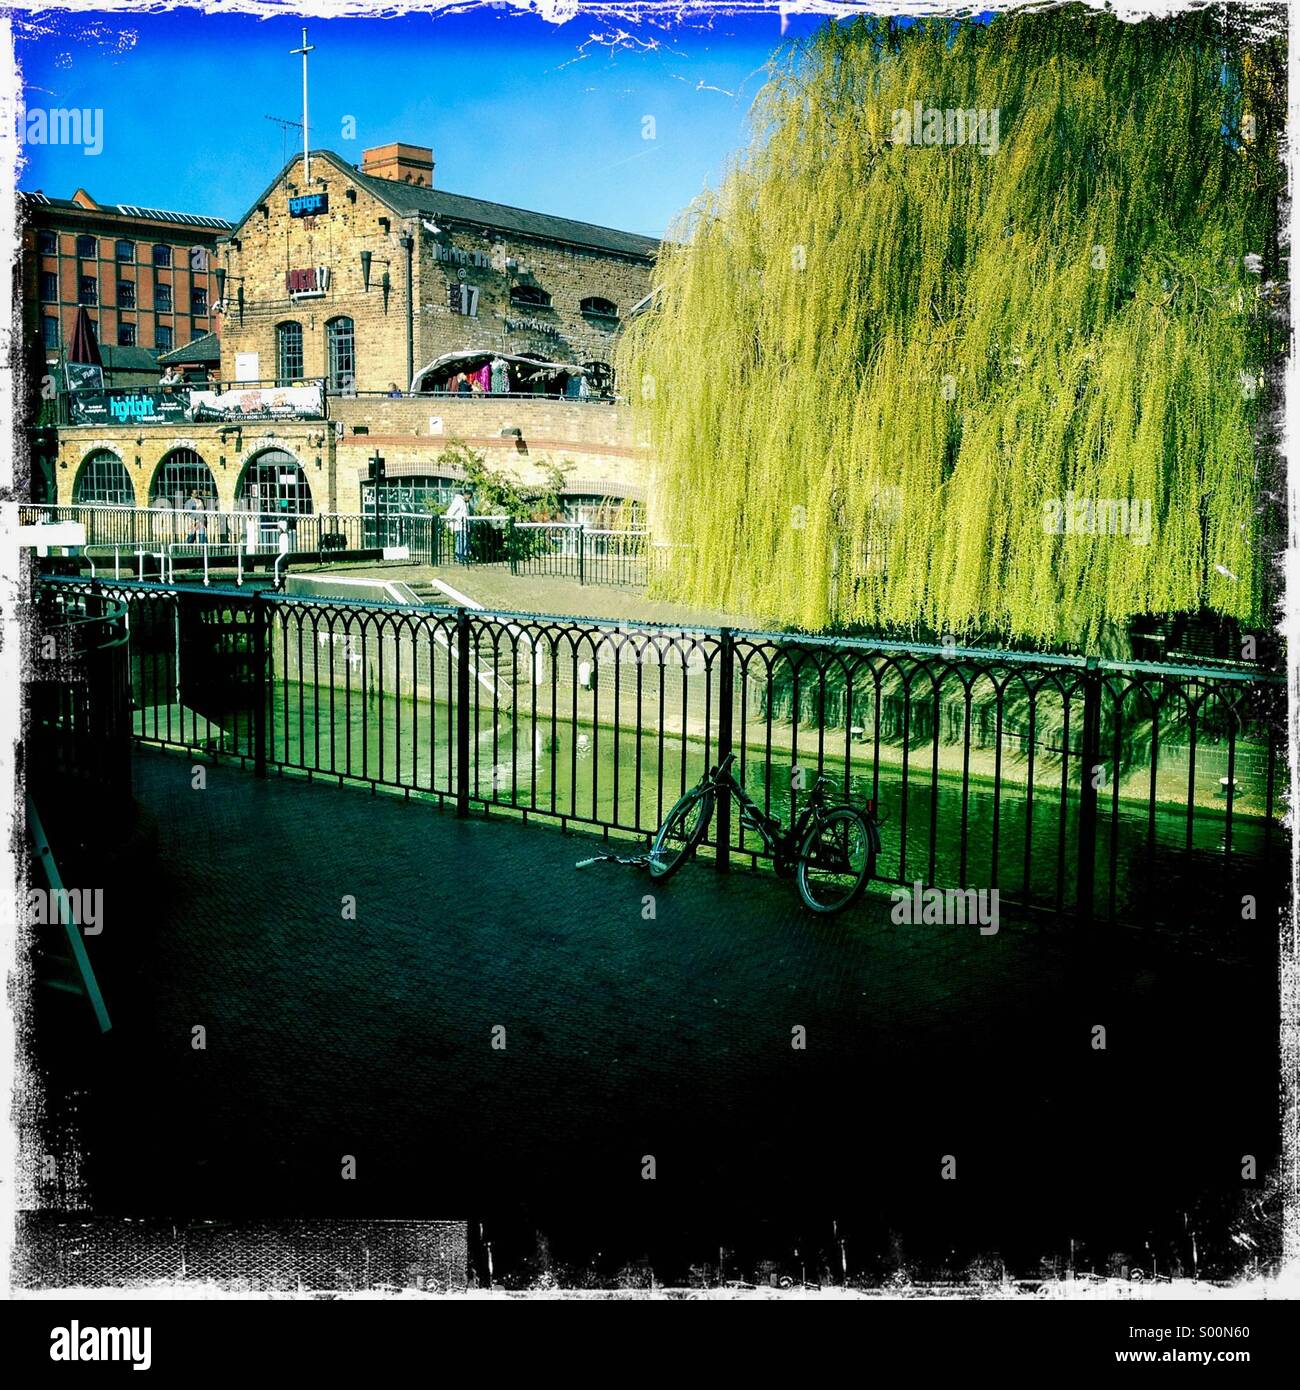 Camden Lock, Camden Town, London UK. Szene aus der Brücke mit Blick auf Schloss mit Weide in Mitte Boden und Eisengitter im Vordergrund. Hipstamatic, iPhone. Foto mit weißem Rand. Stockfoto